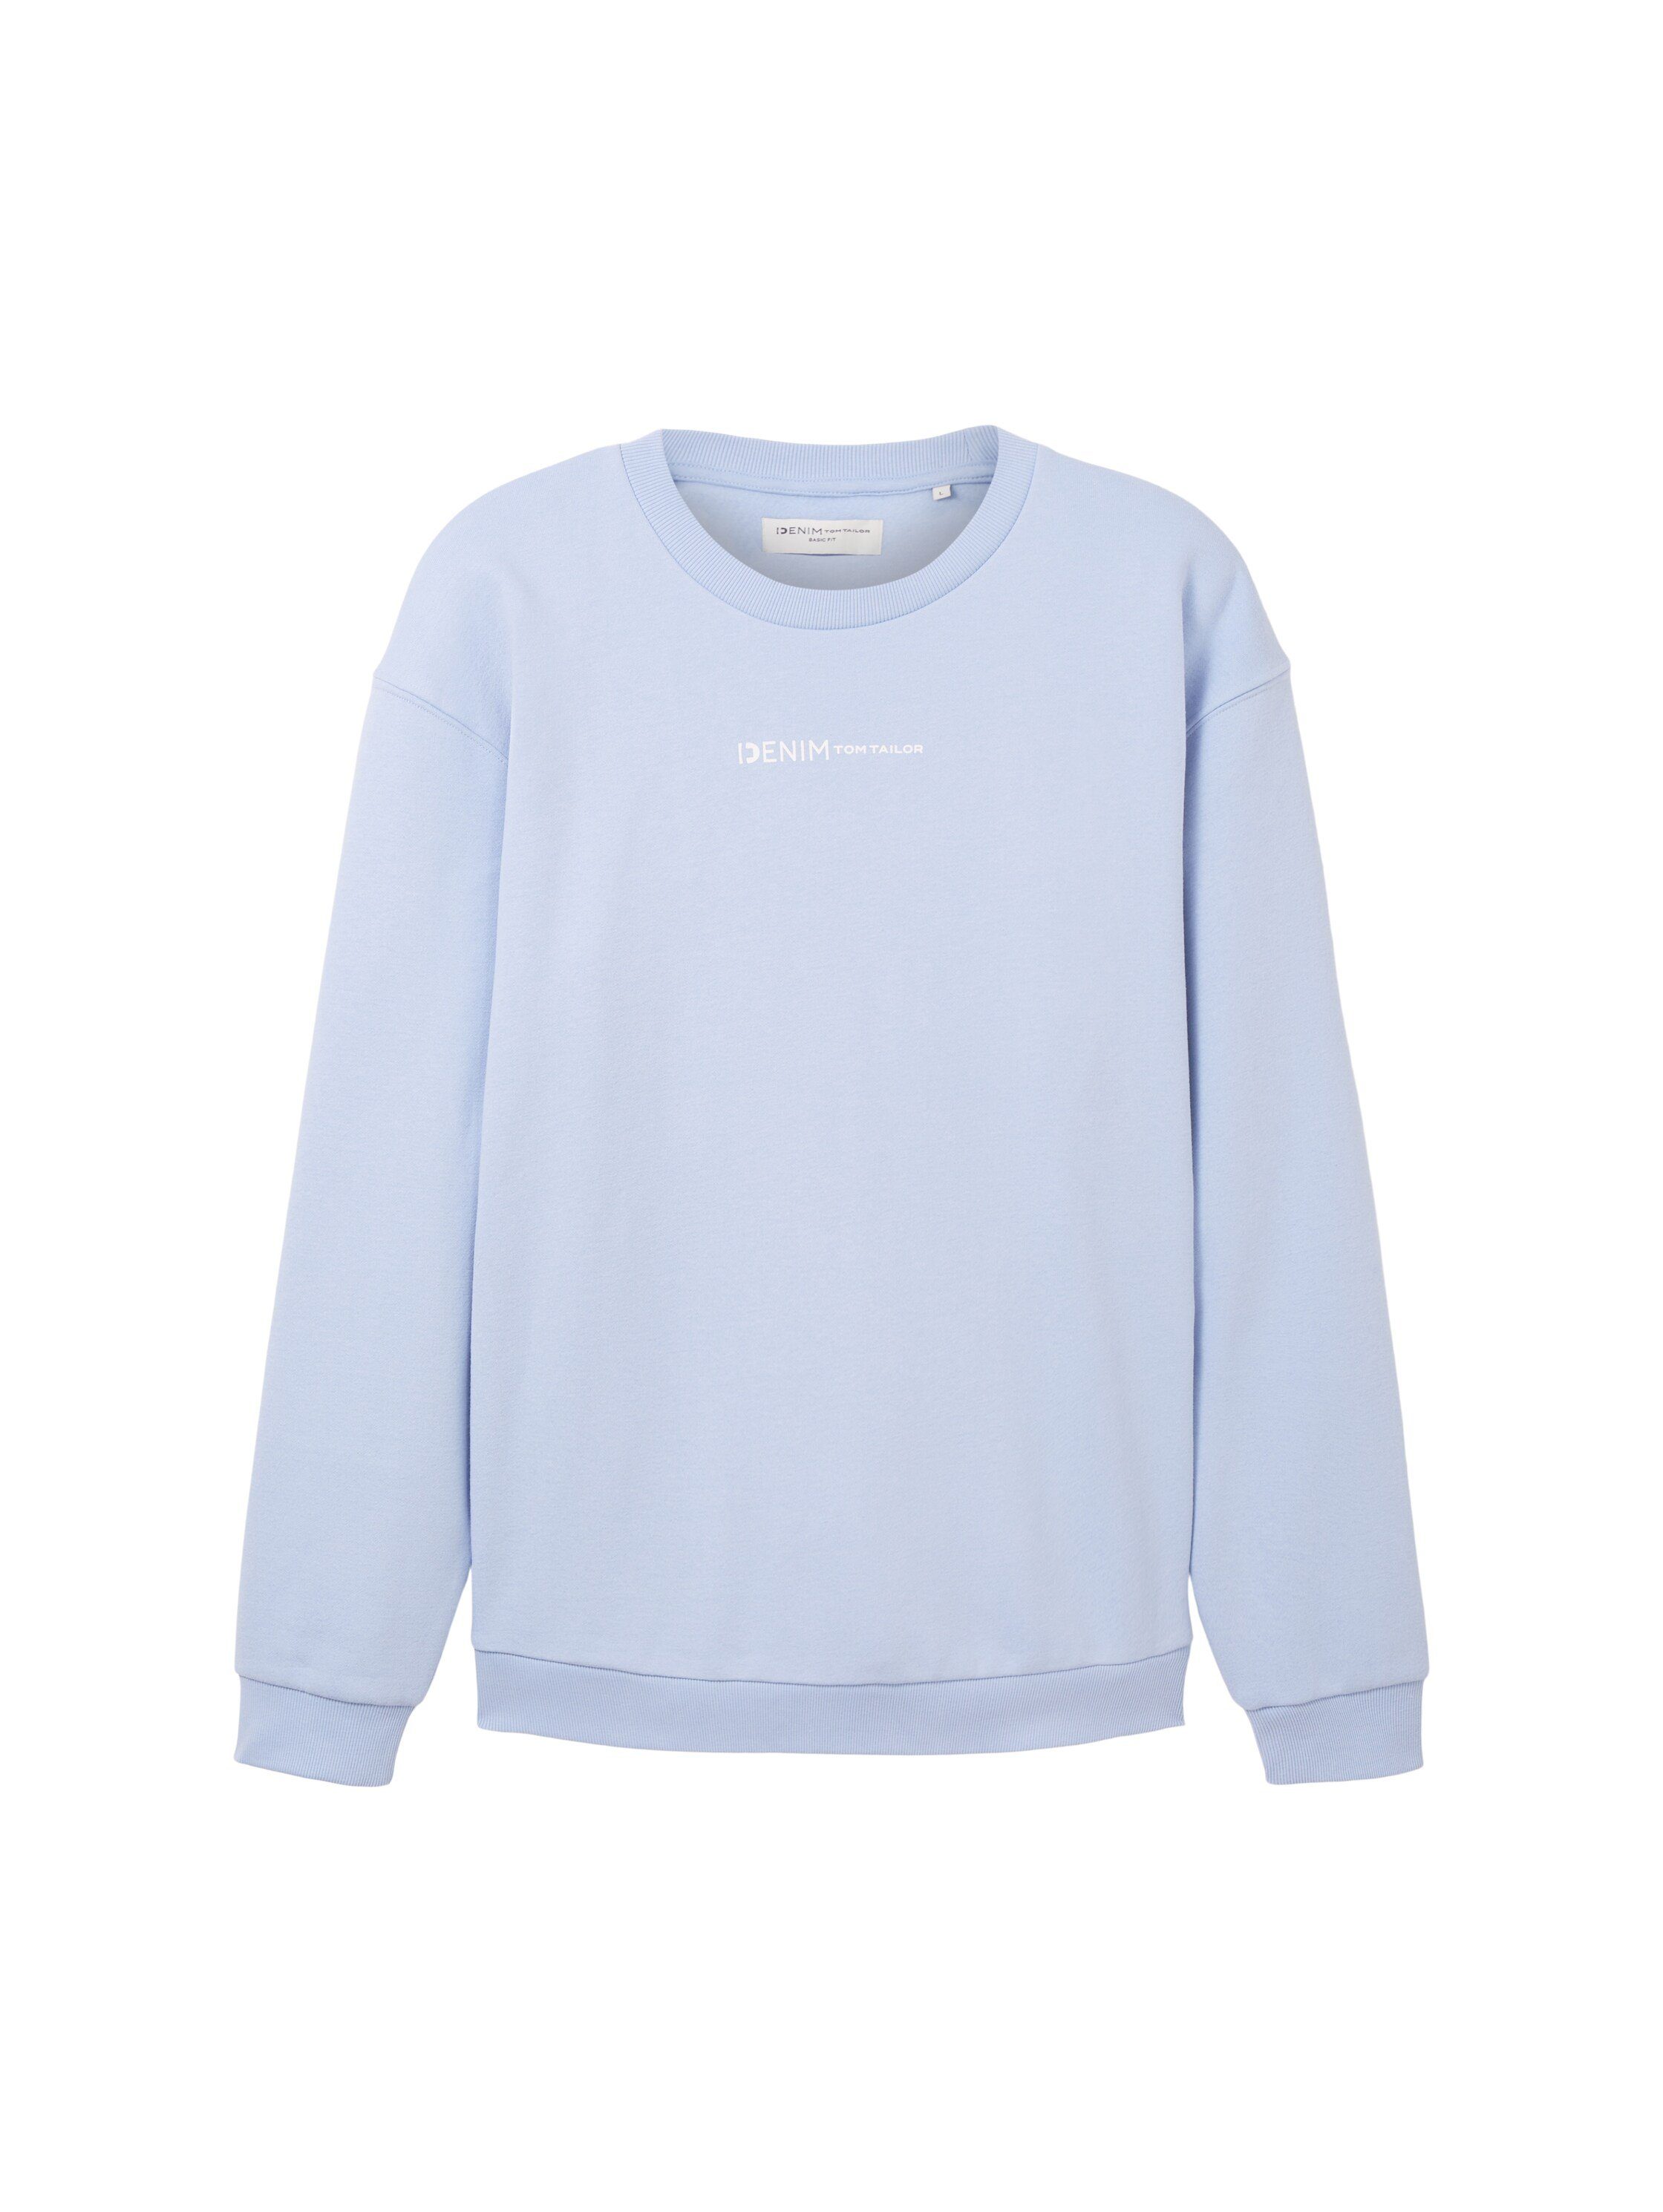 Sweatshirt mit blue TAILOR TOM Logofrontprint Denim tinted